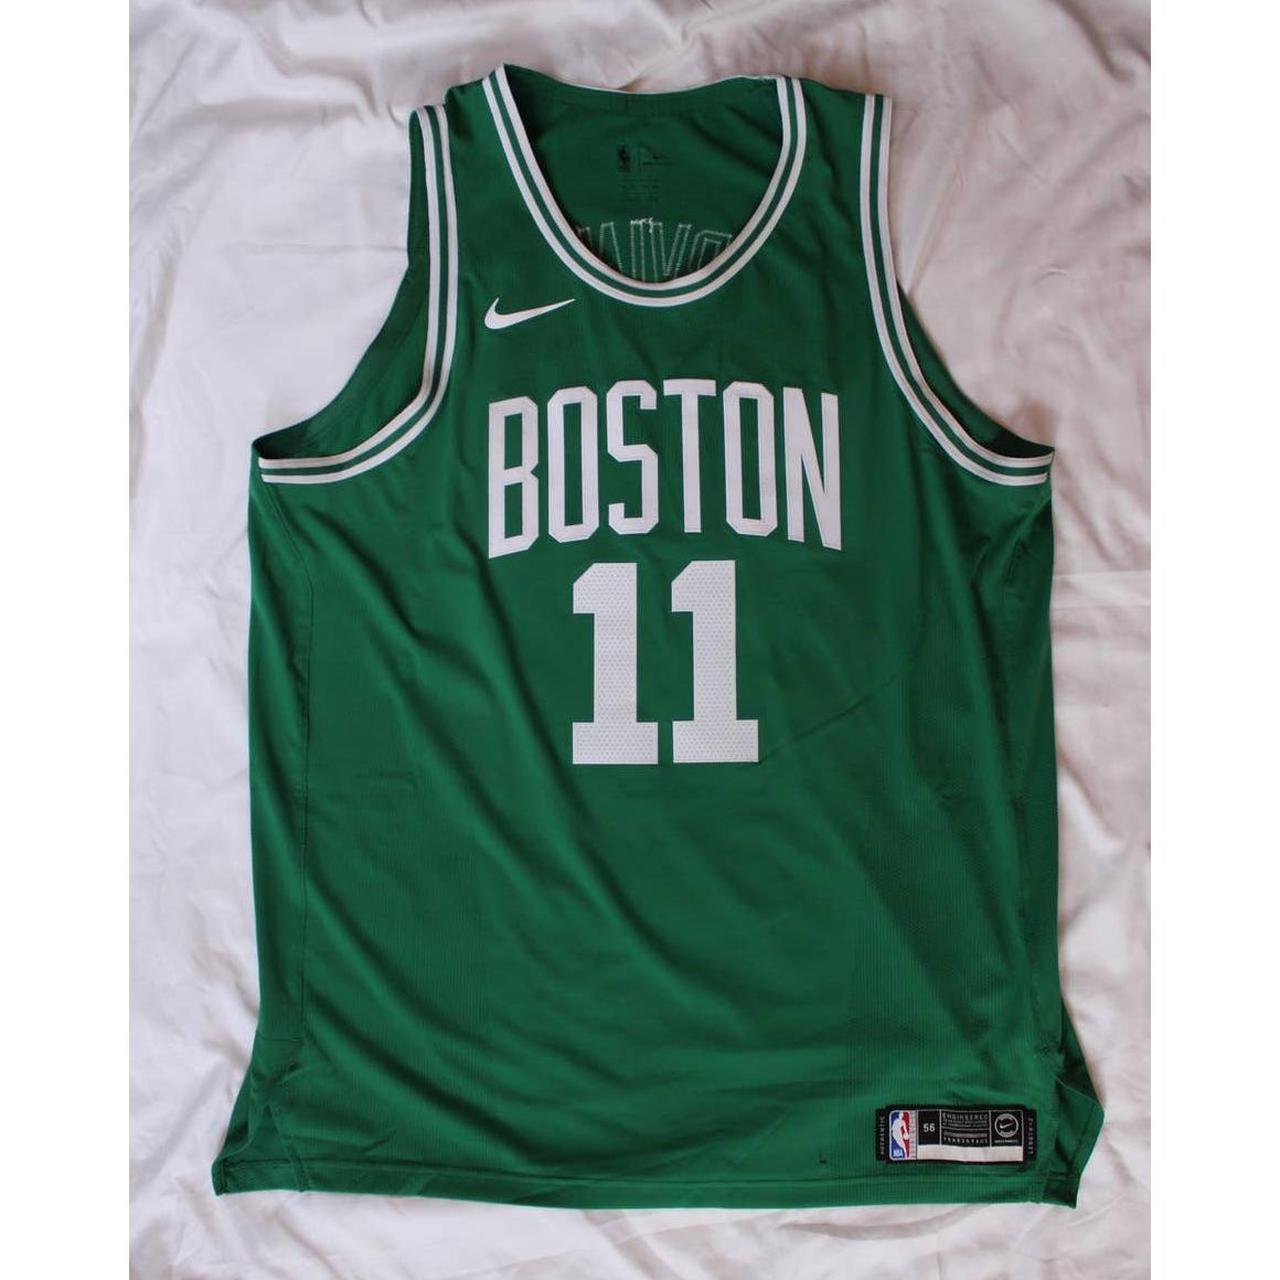 Nike Kyrie Irving Boston Celtics NBA Swingman Jersey - Depop